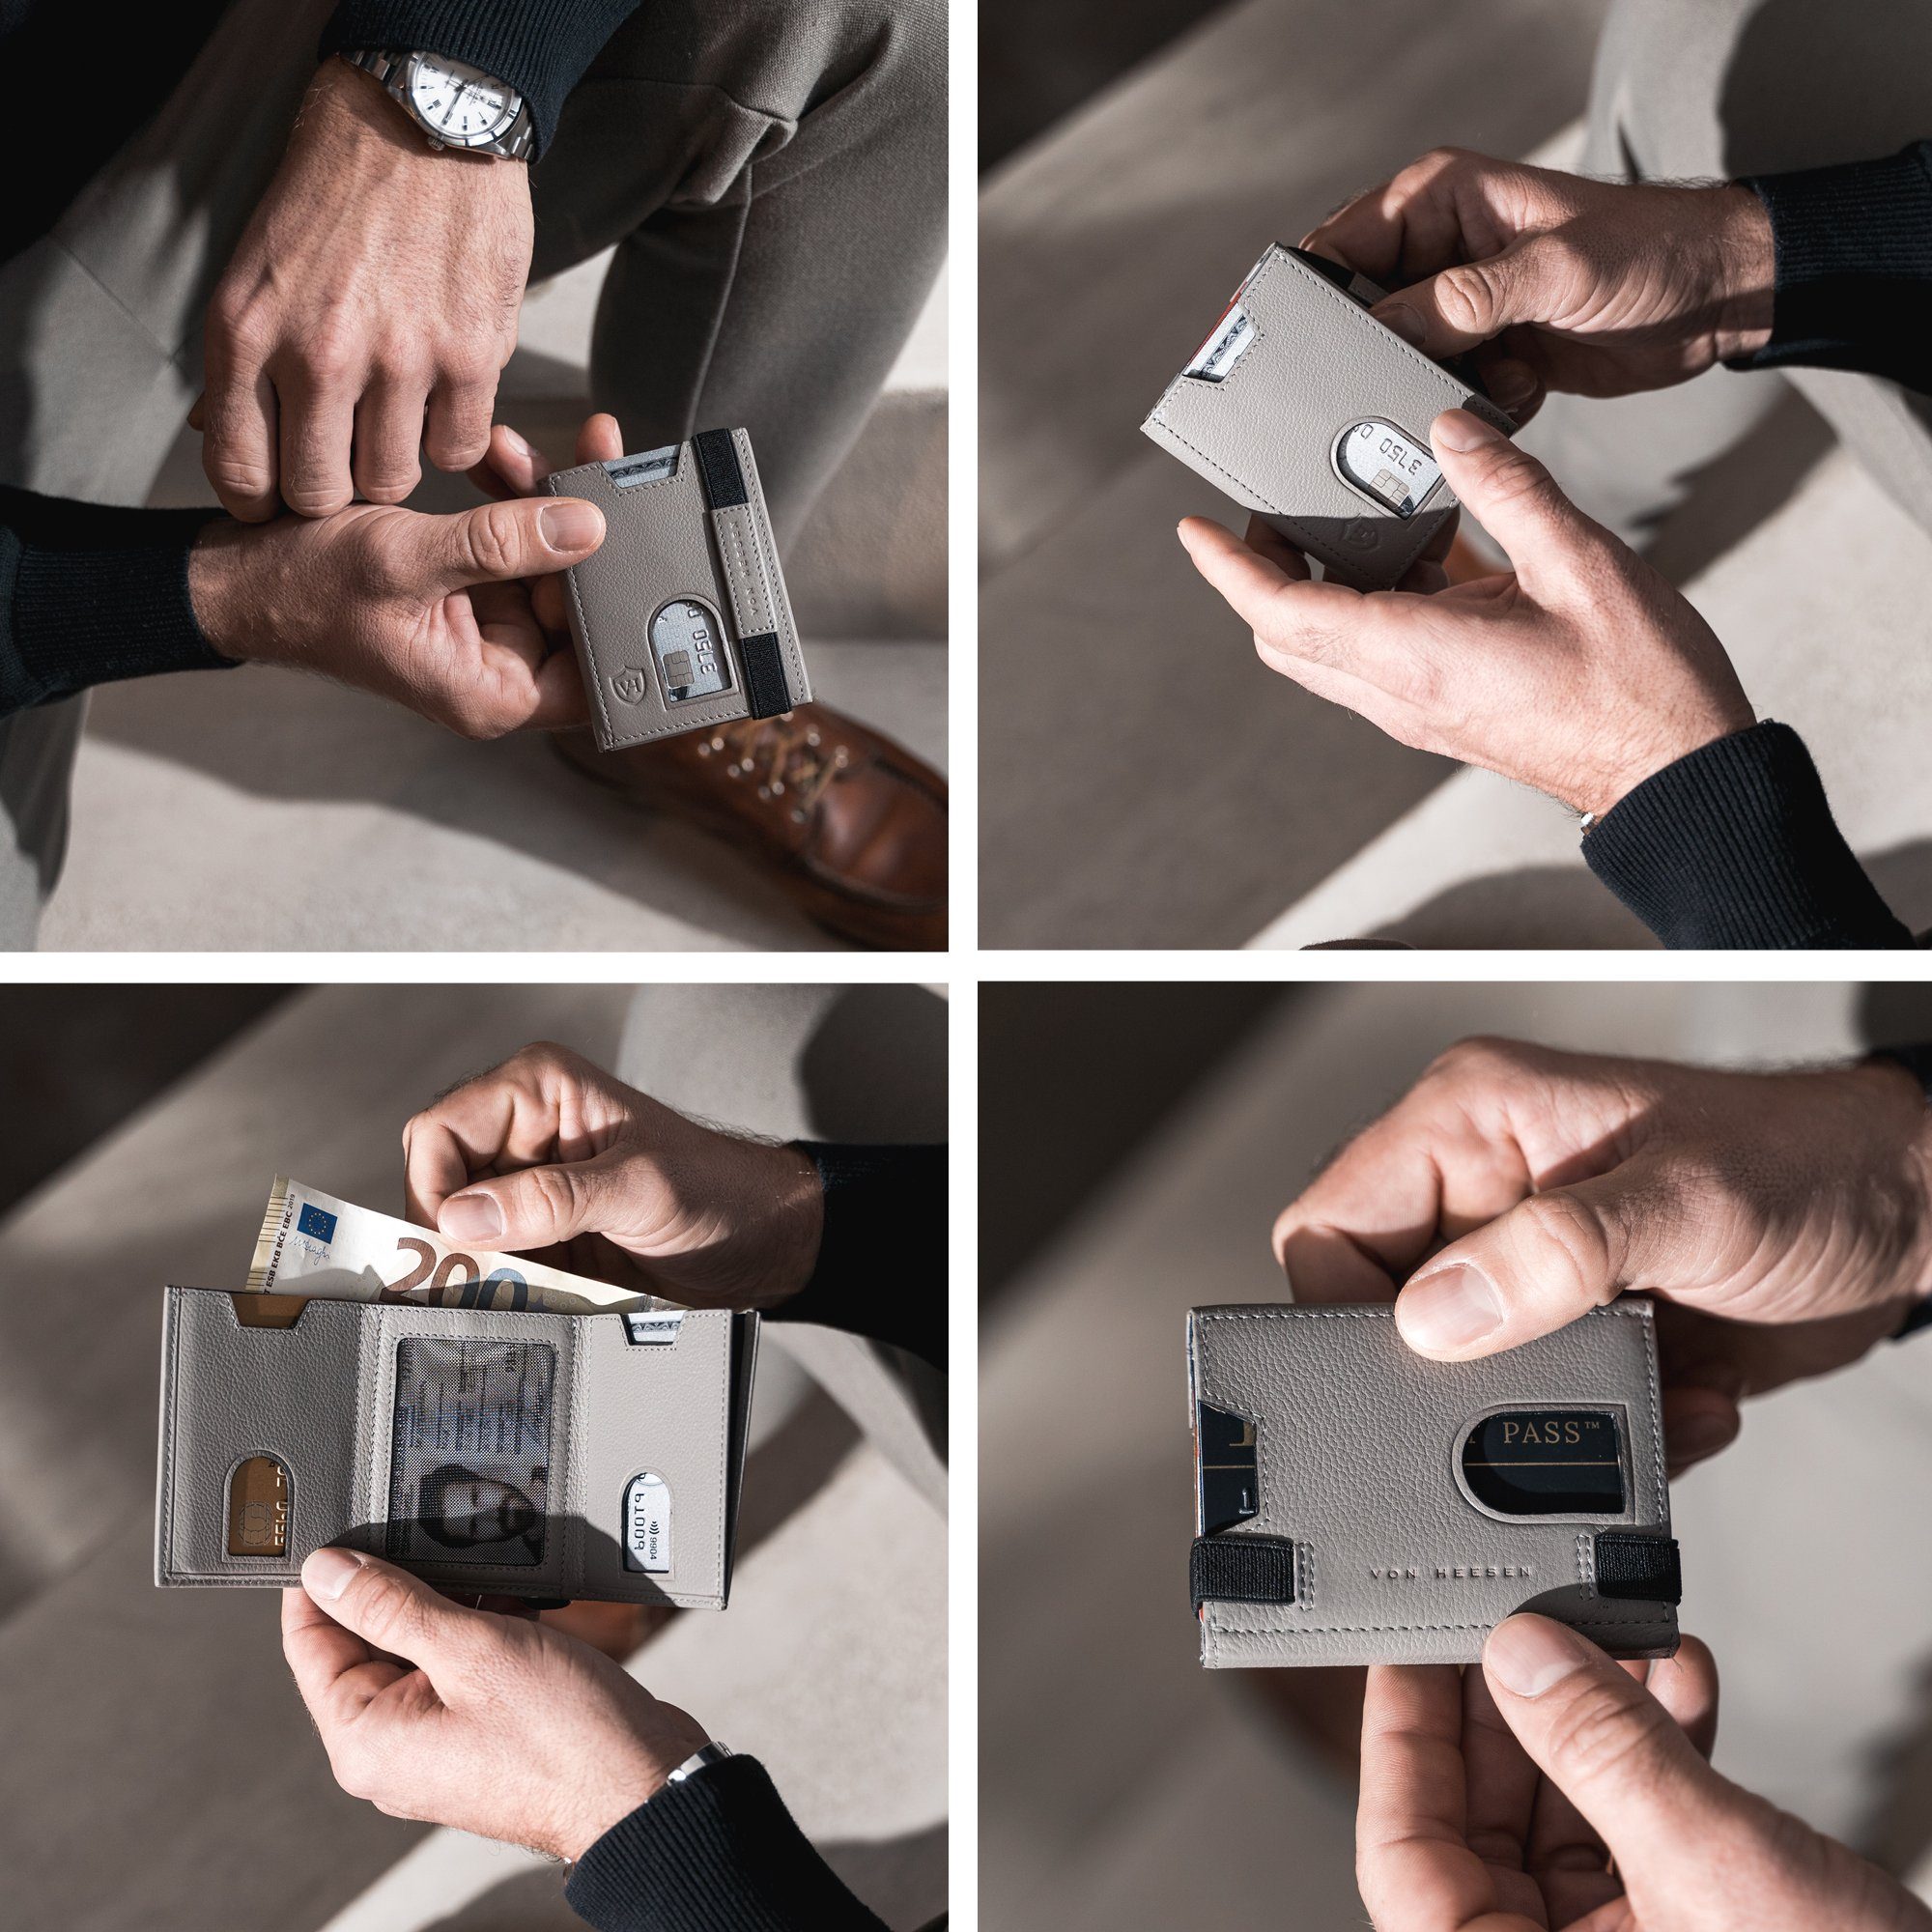 VON HEESEN Geldbörse 6 mit Slim Portemonnaie RFID-Schutz Kartenfächer, inkl. Wallet Geldbeutel Geschenkbox & Whizz Wallet Grau